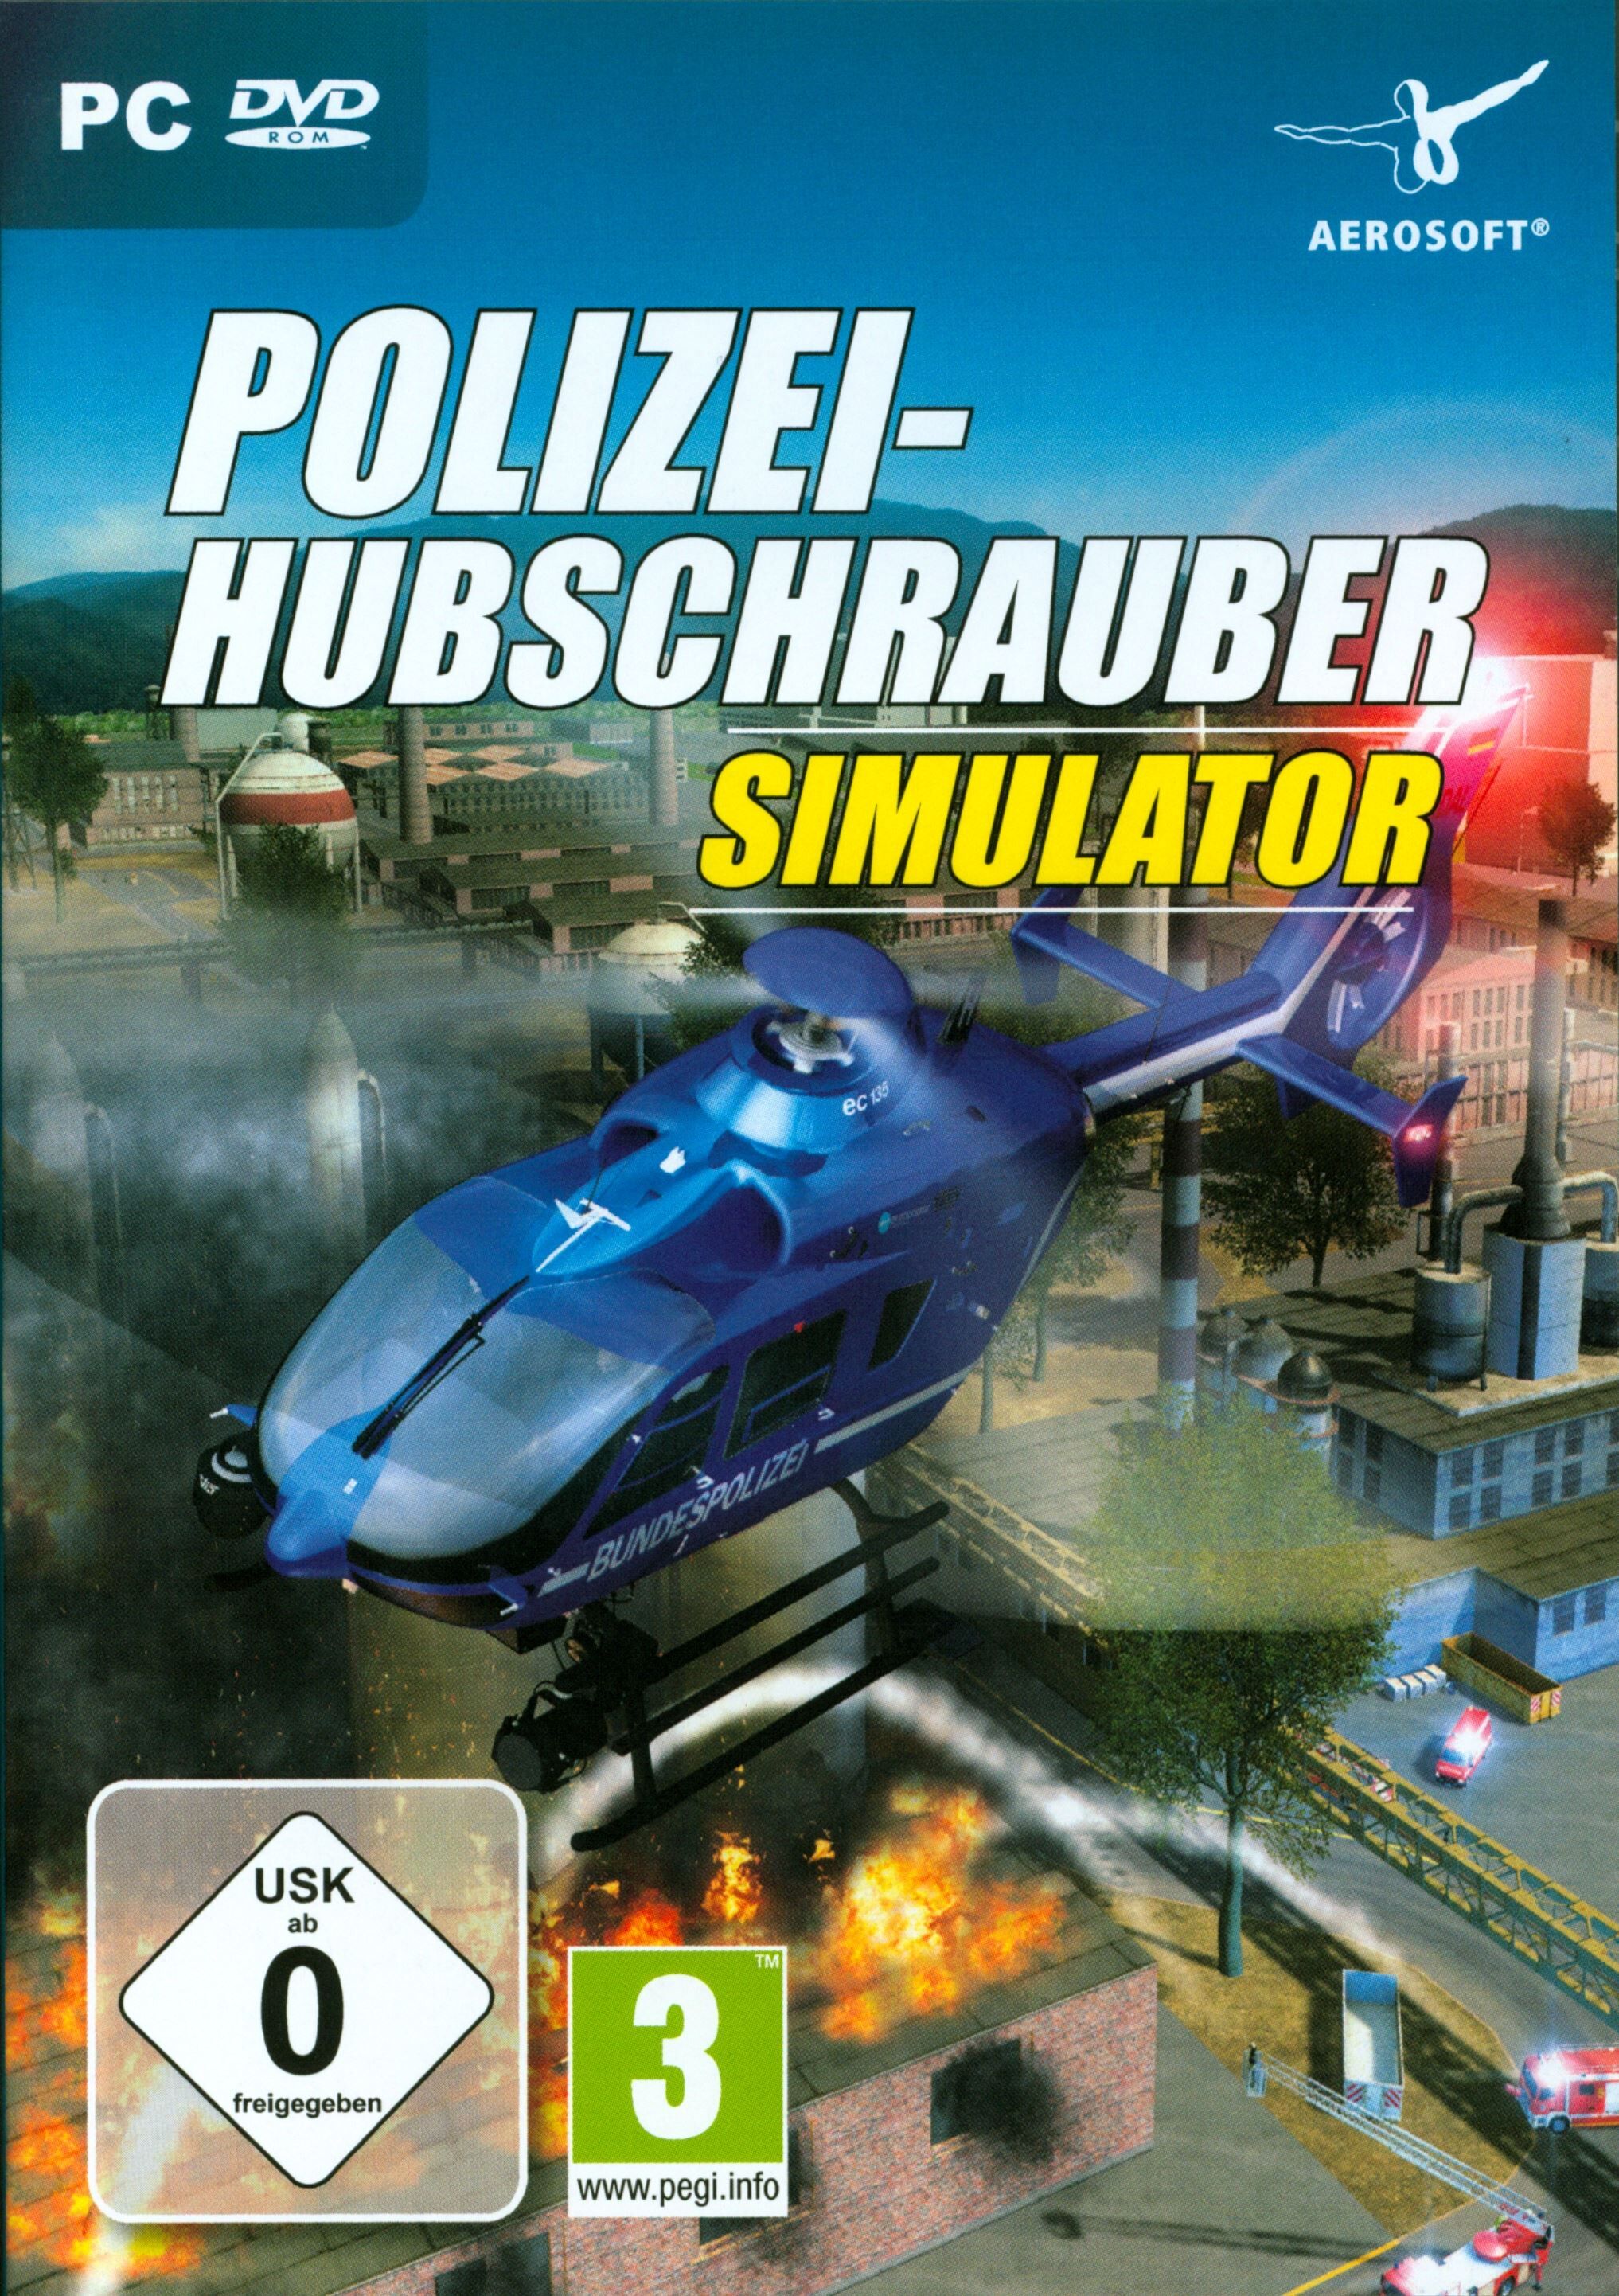 Aerosoft - Polizeihubschrauber Simulator [DVD] [PC] (D)